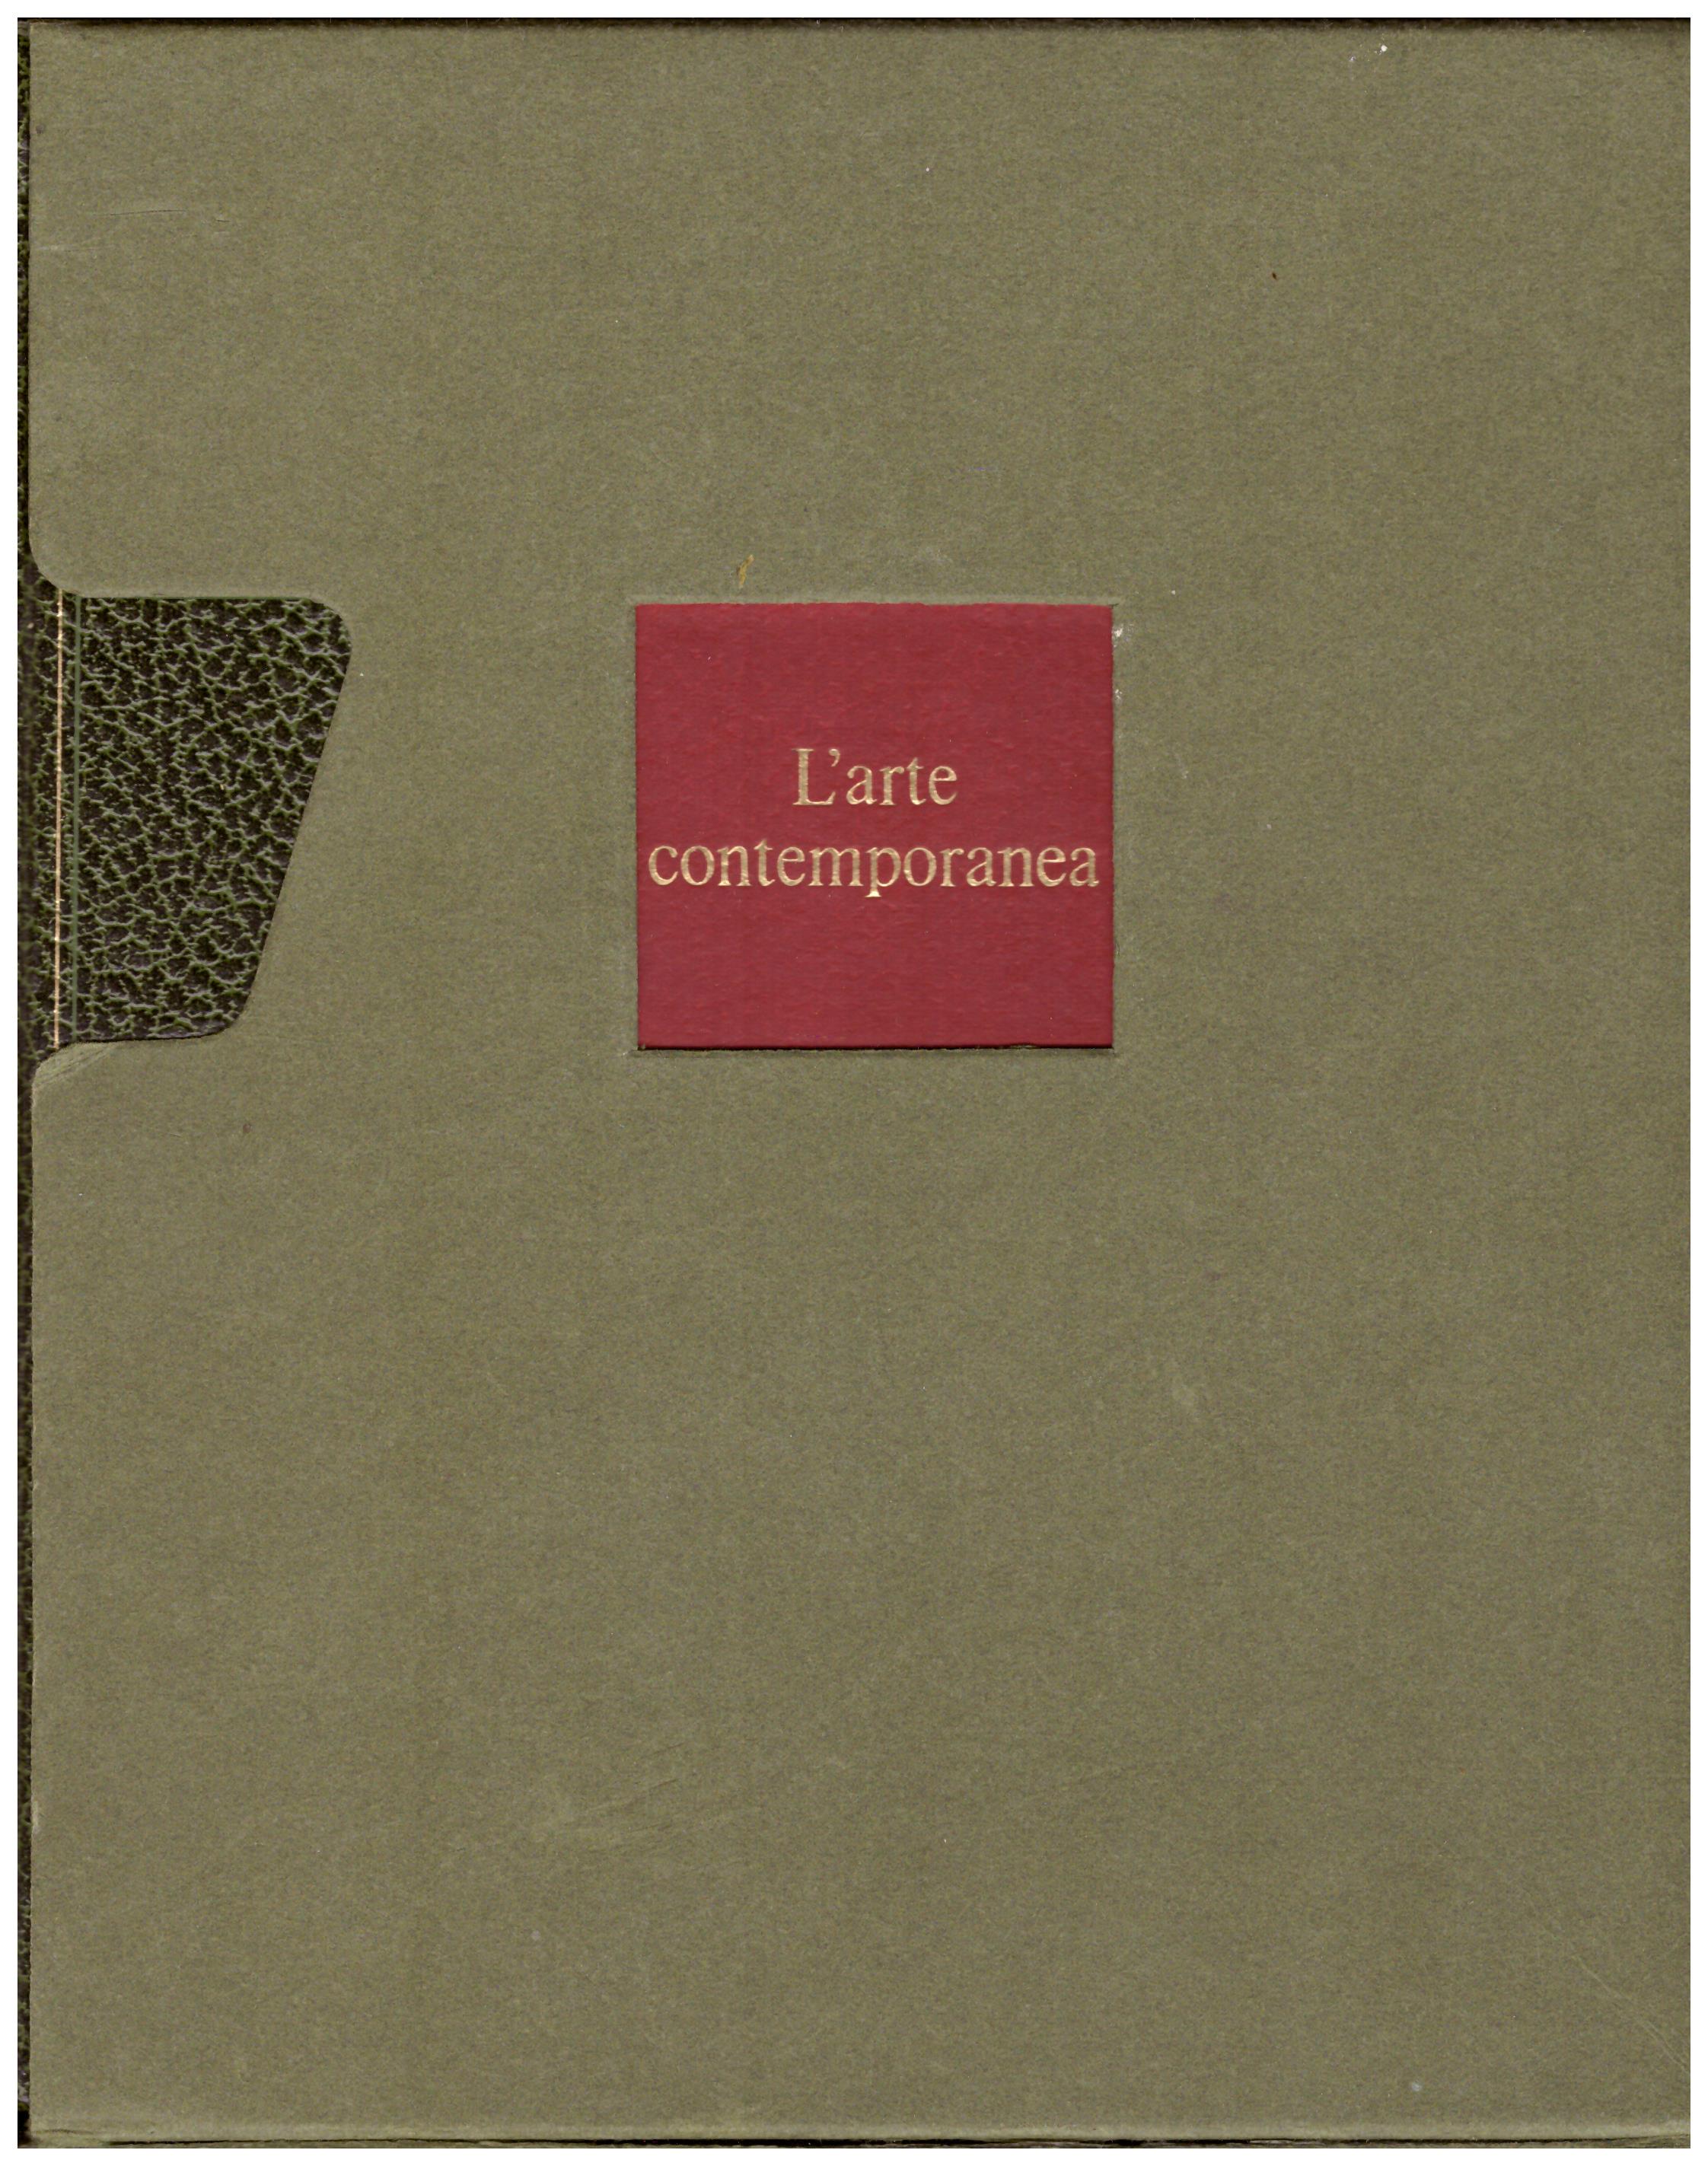 Titolo: L'arte nel mondo n.18 L'arte contemporanea Autore: Albert Schug Editore: Rizzoli, 1970